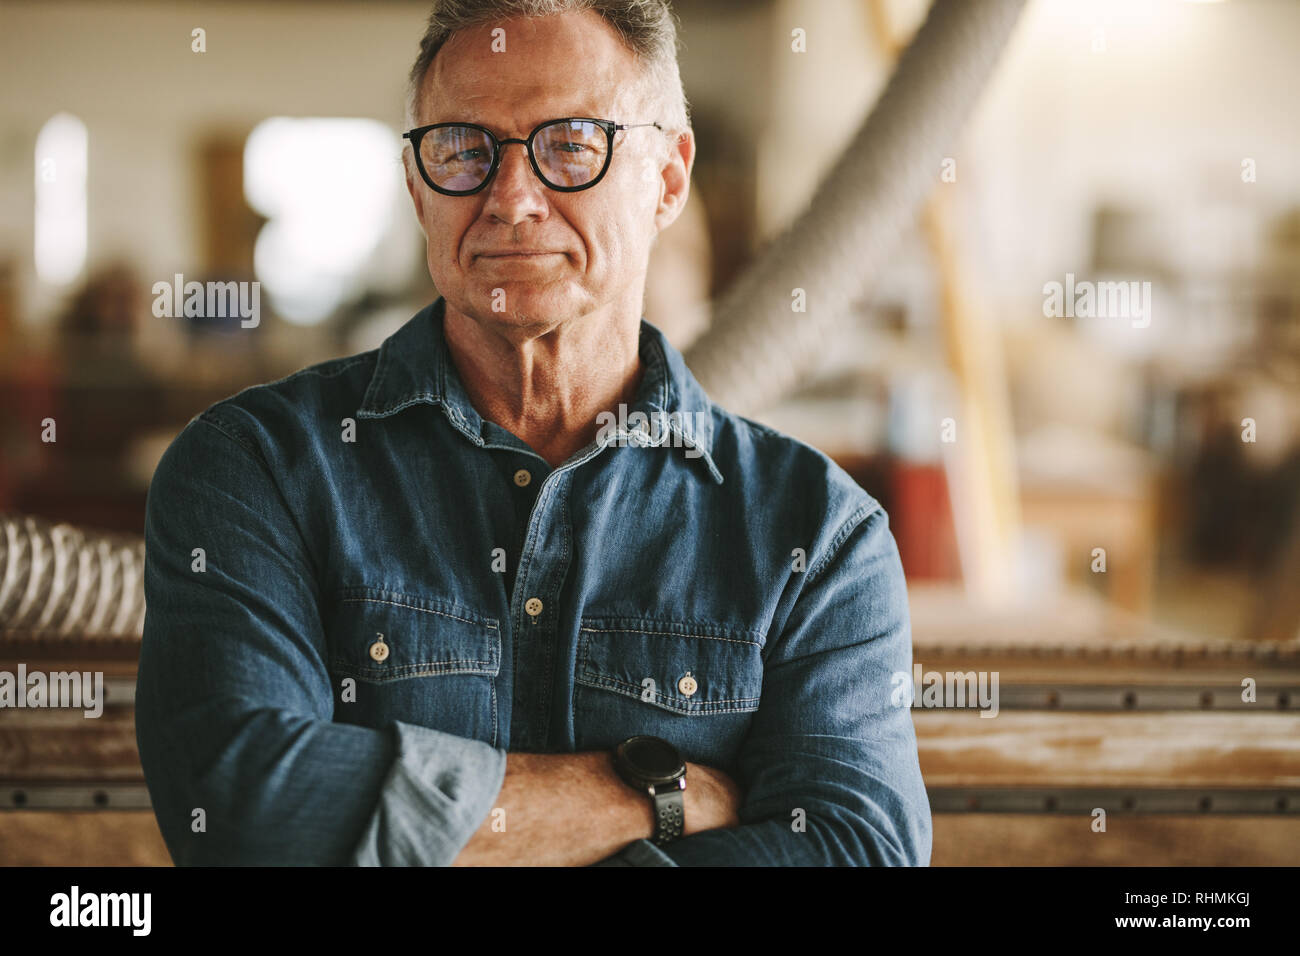 Portrait von erfolgreichen älteren Mann in Brillen stehen in seiner Schreinerei. Stolz Schreinerei Inhaber Stehen mit verschränkten Armen. Stockfoto